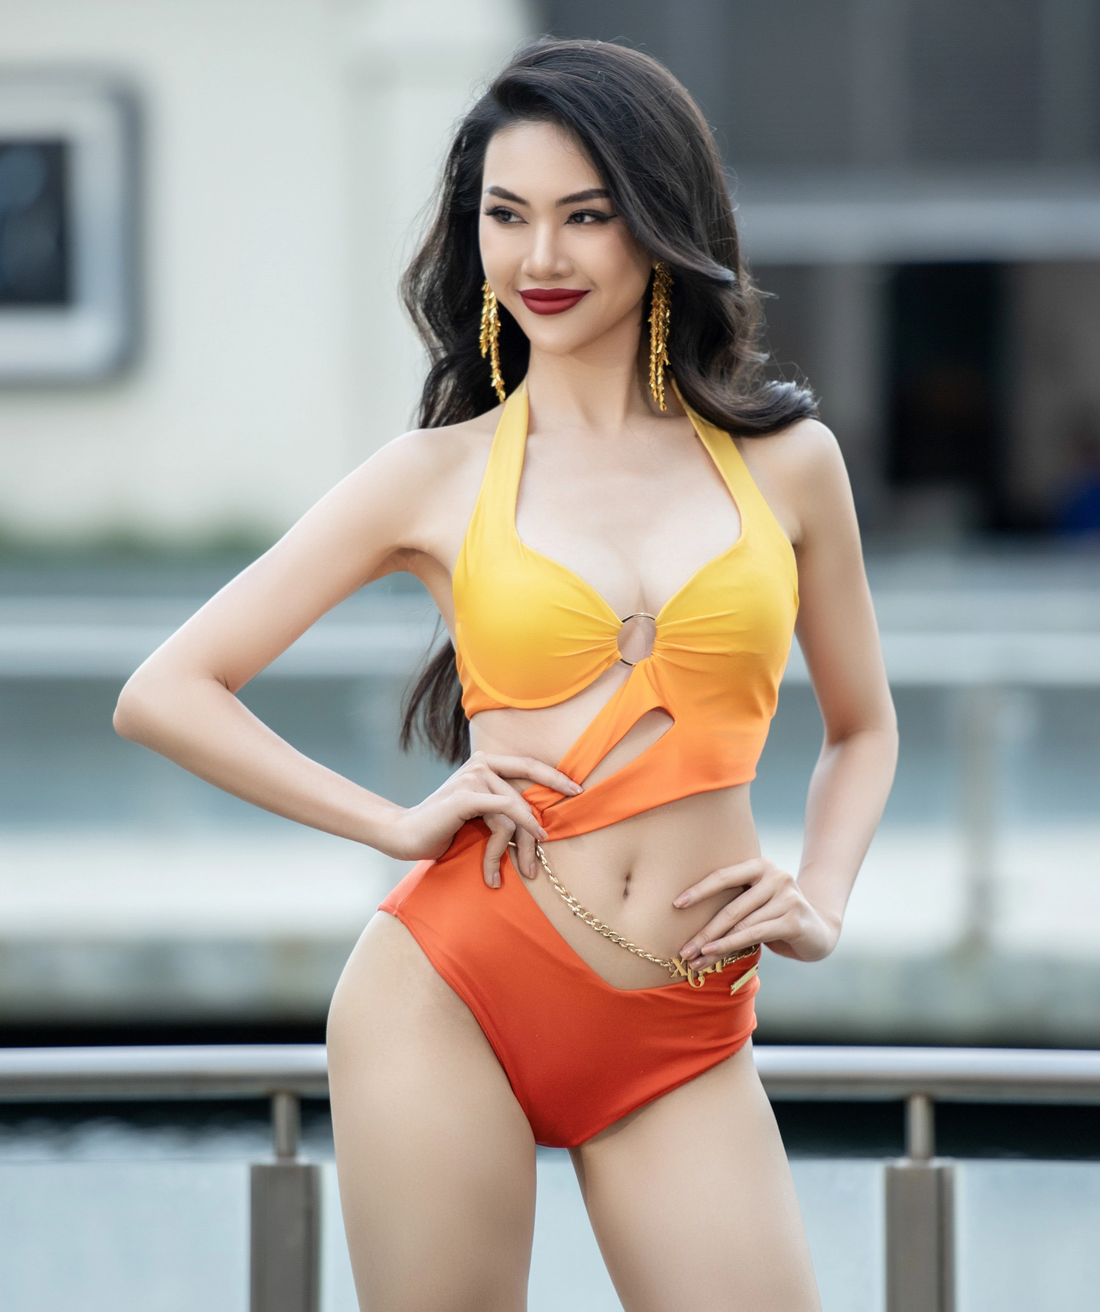 Người mẫu Quỳnh Hoa khoe vẻ đẹp quyến rũ trong trang phục áo tắm - Ảnh: BTC